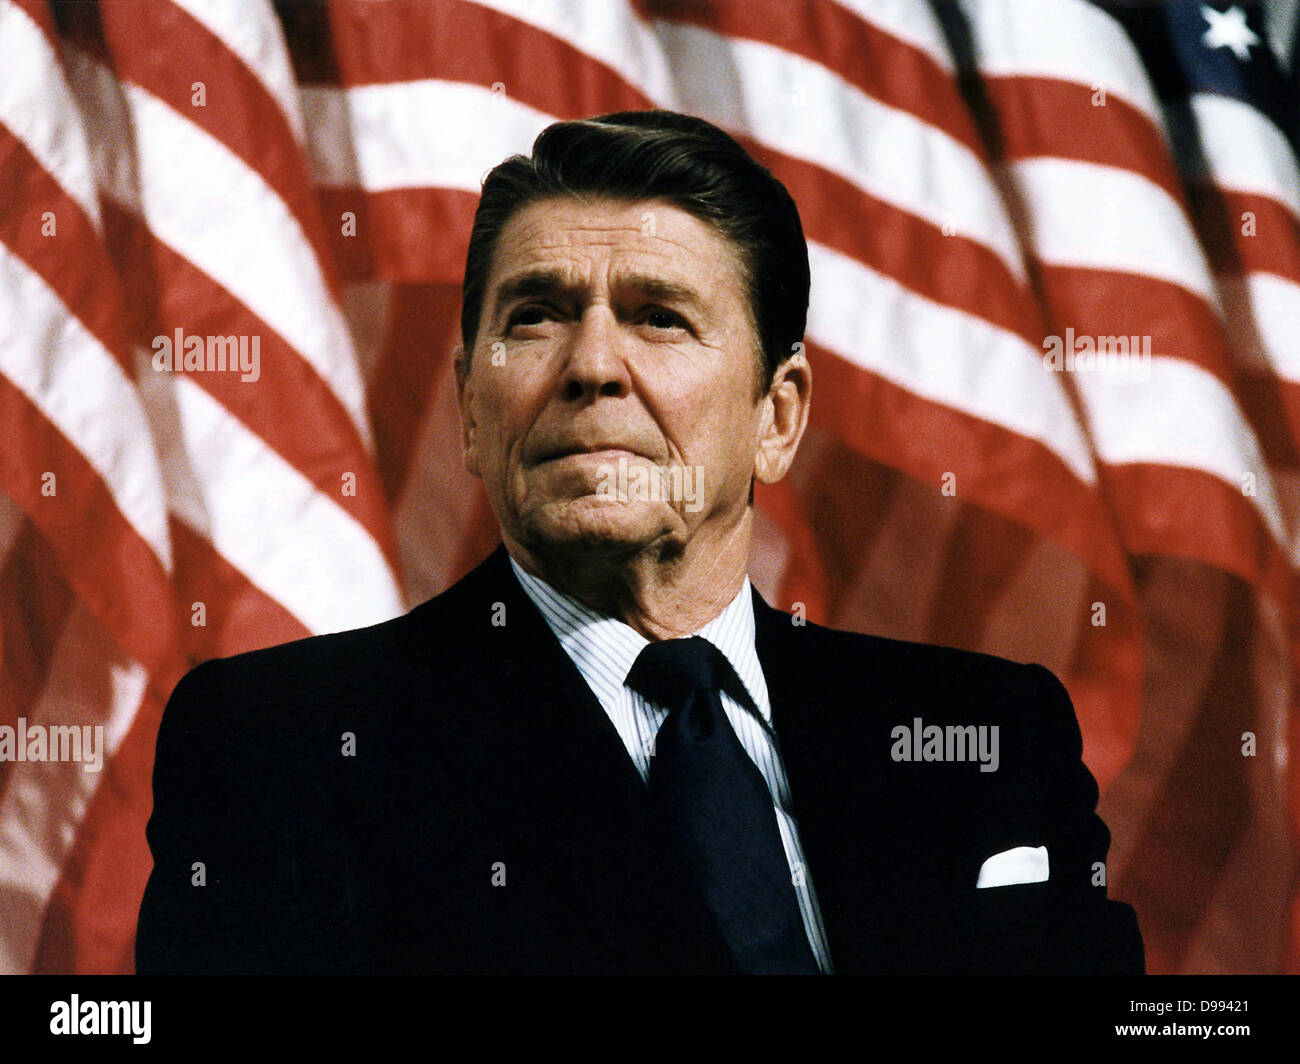 Ronald Wilson Reagan (1911-2004) quarantesimo Presidente degli Stati Uniti (1981-1989) e xxxiii governatore della California (1967-1975). Testa e spalle verticale con stelle e strisce in background. Attore americano candidato repubblicano Foto Stock